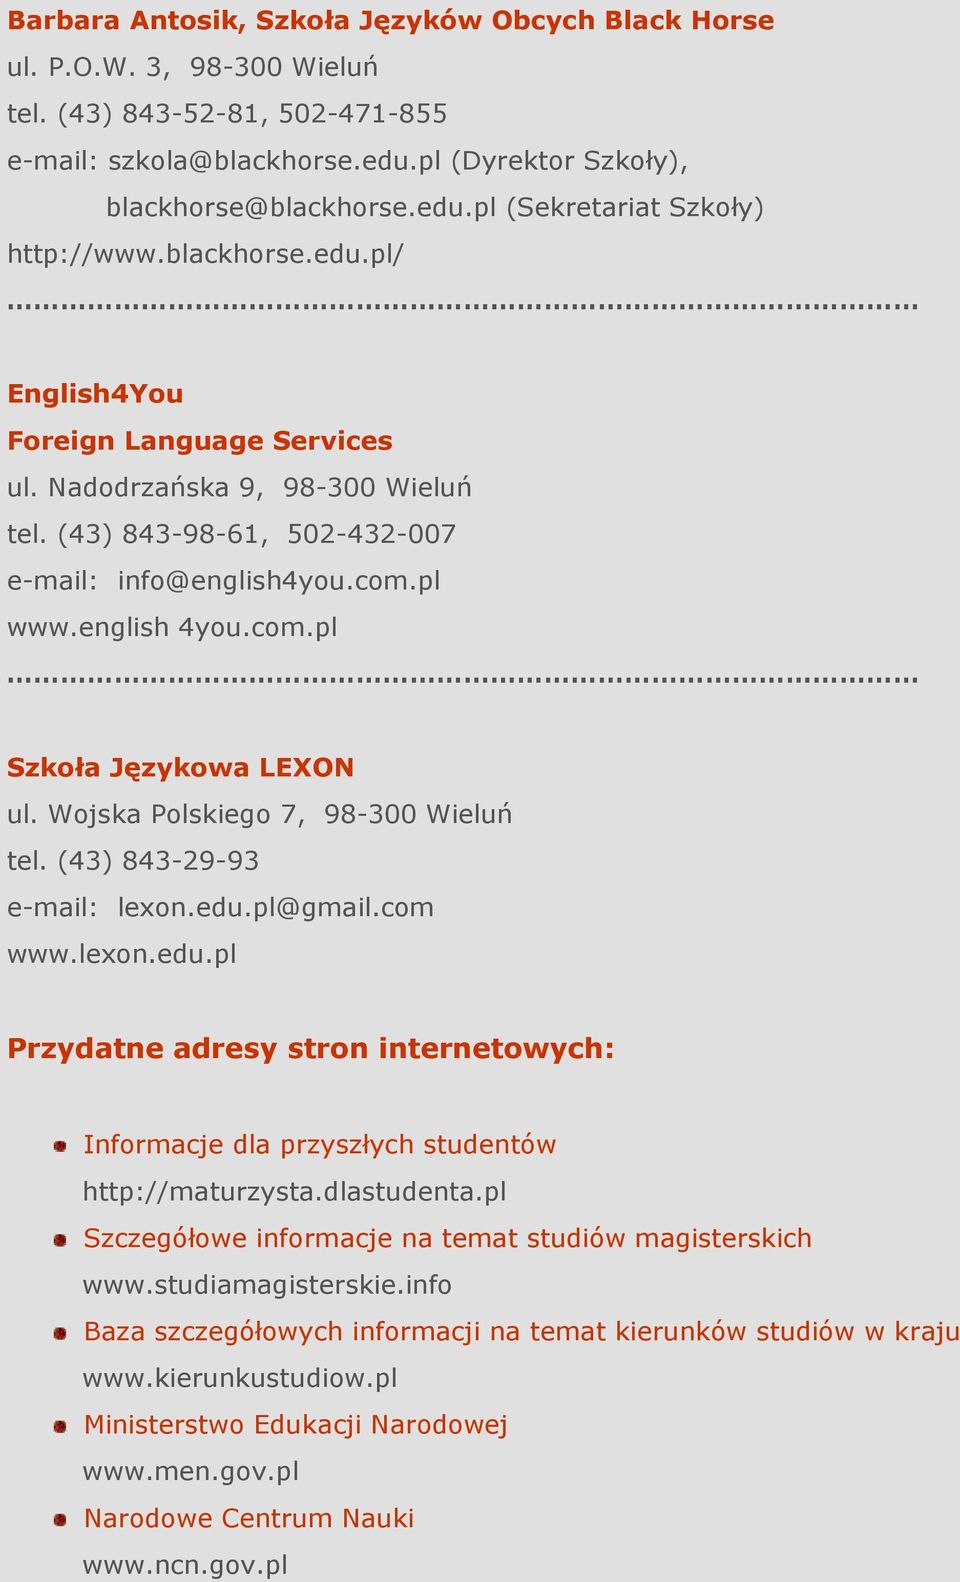 Wojska Polskiego 7, 98-300 Wieluń tel. (43) 843-29-93 e-mail: lexon.edu.pl@gmail.com www.lexon.edu.pl Przydatne adresy stron internetowych: Informacje dla przyszłych studentów http://maturzysta.